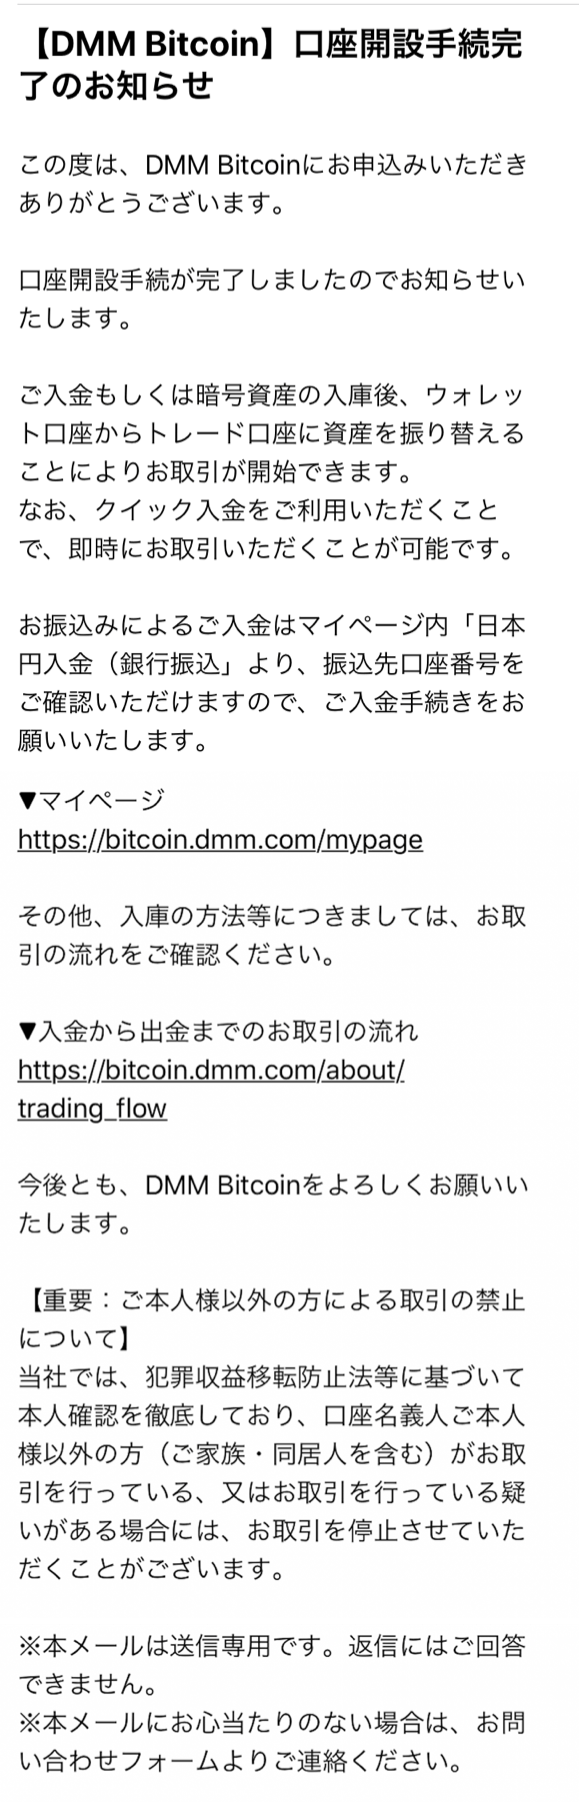 DMMビットコイン（DMM Bitcoin）の会員登録方法の流れ61